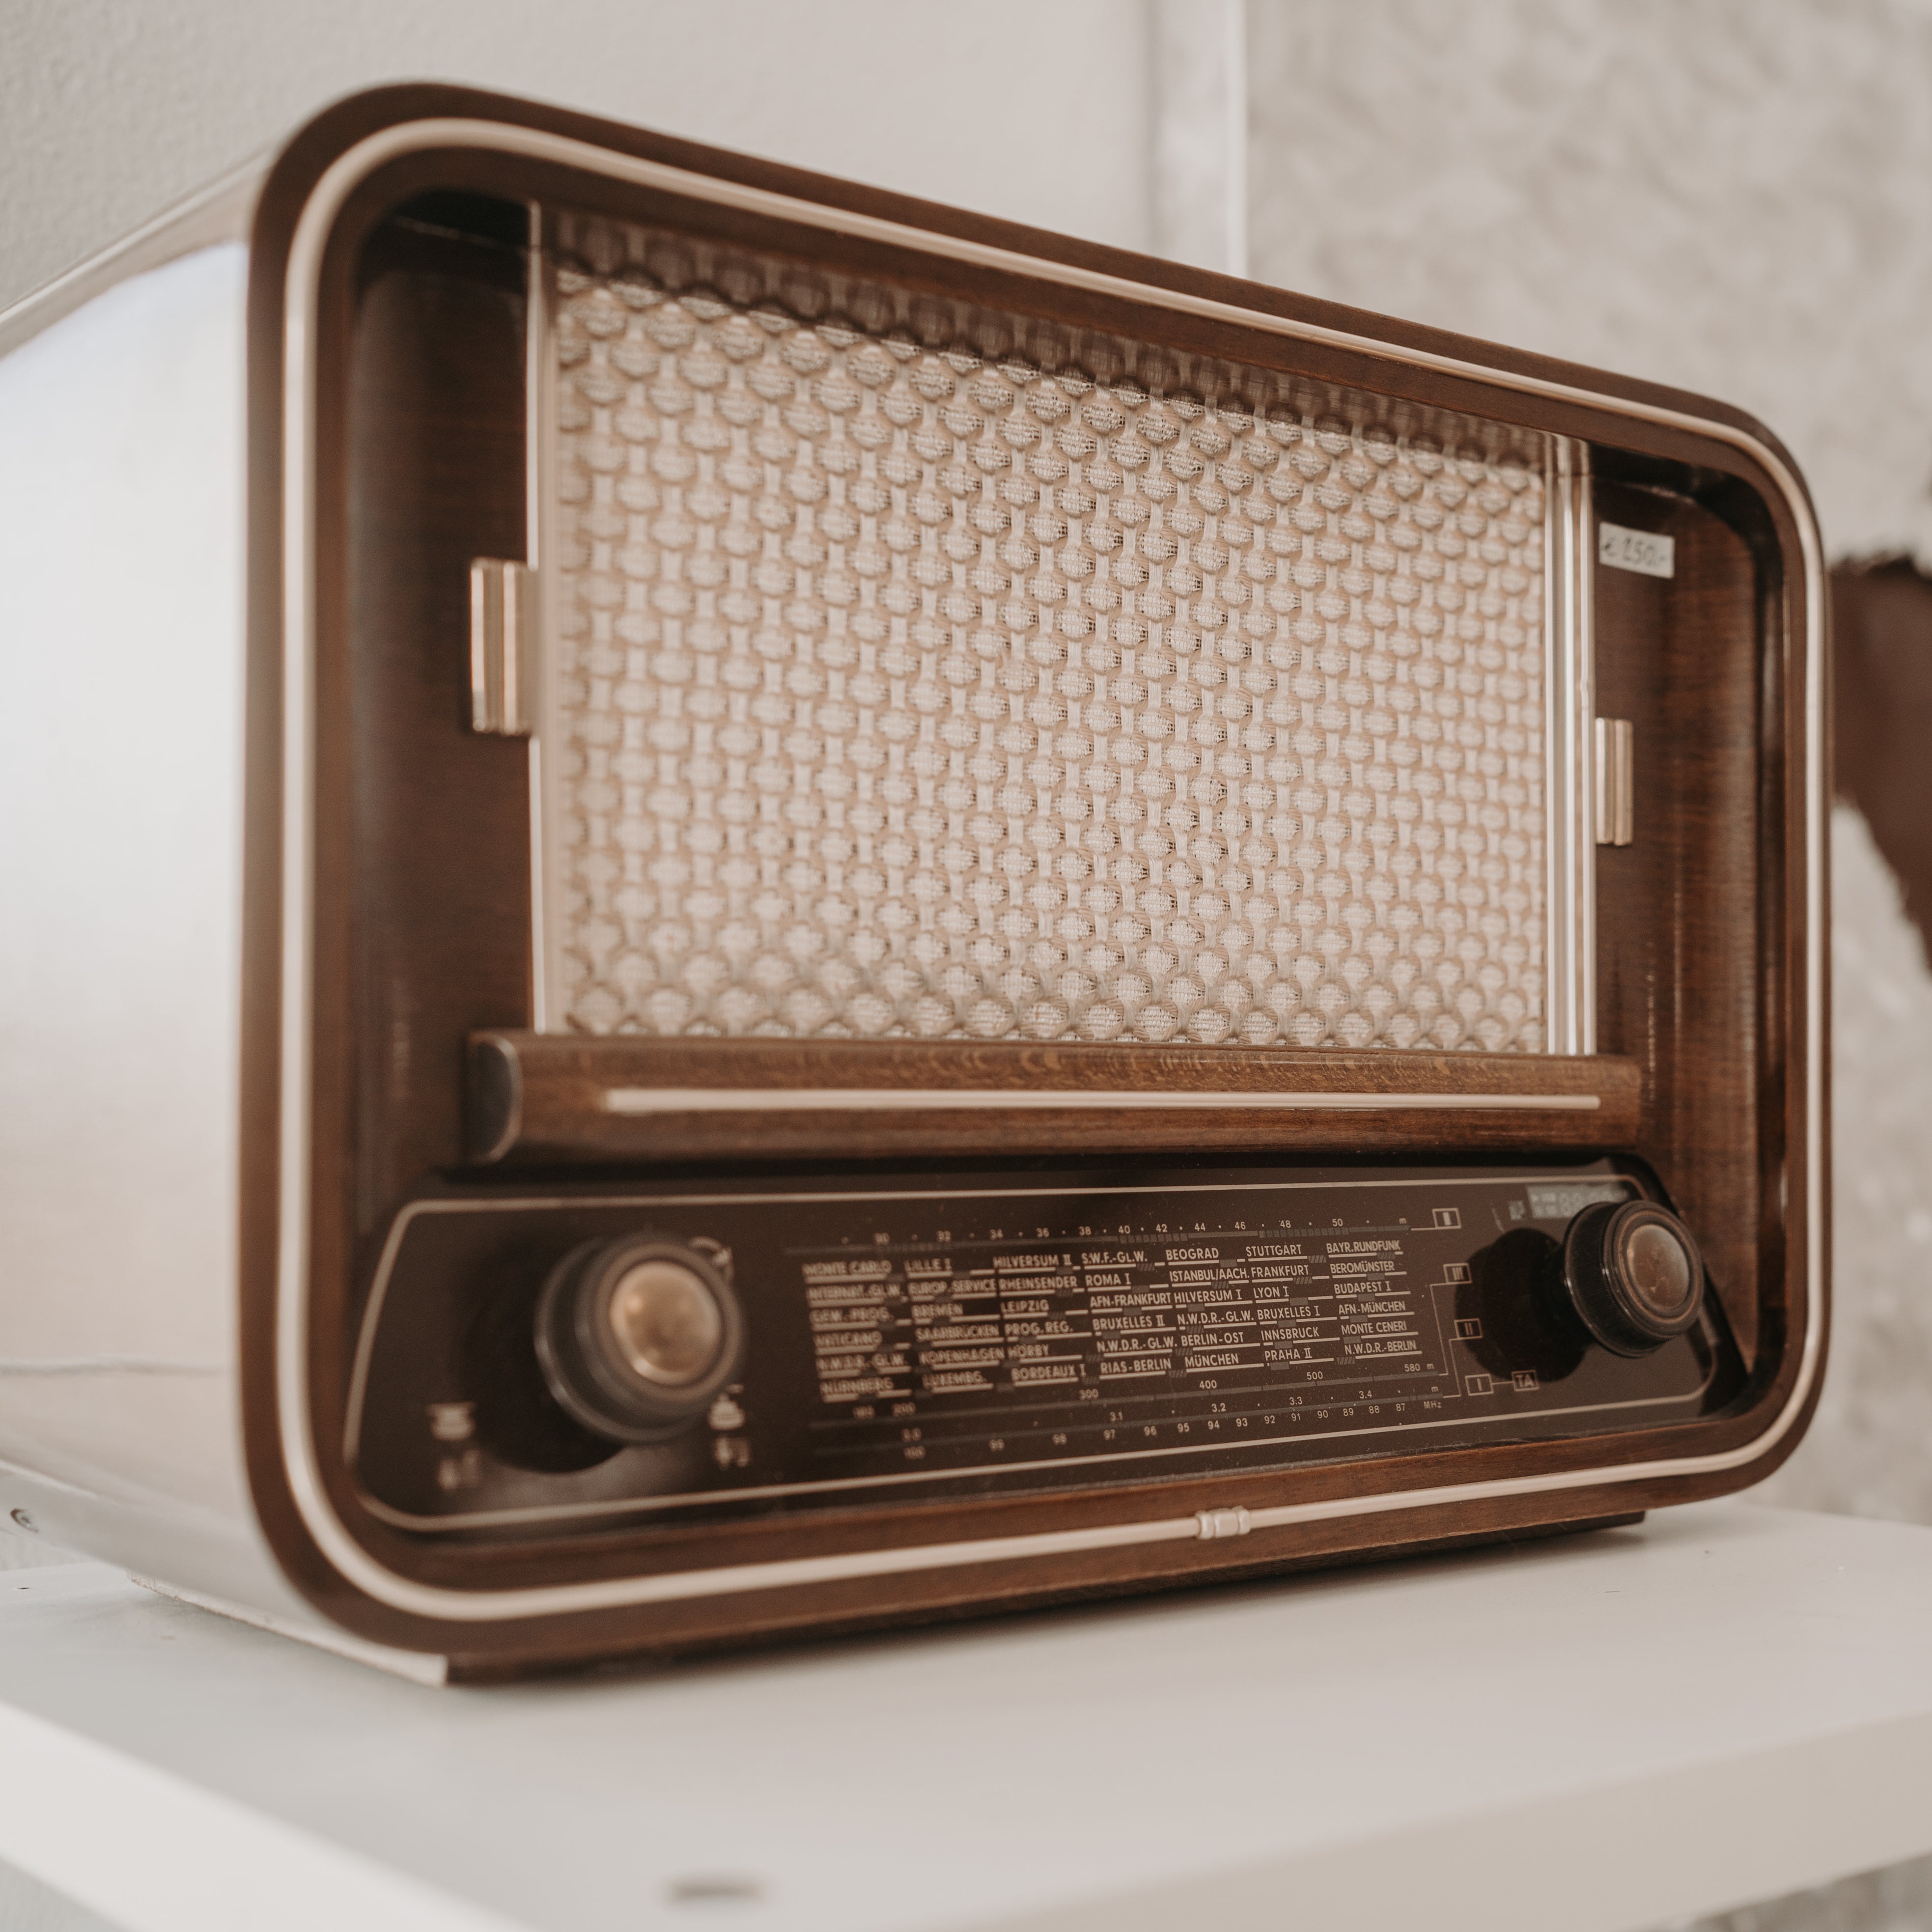 7. Blaupunkt Vintage Digitalradio